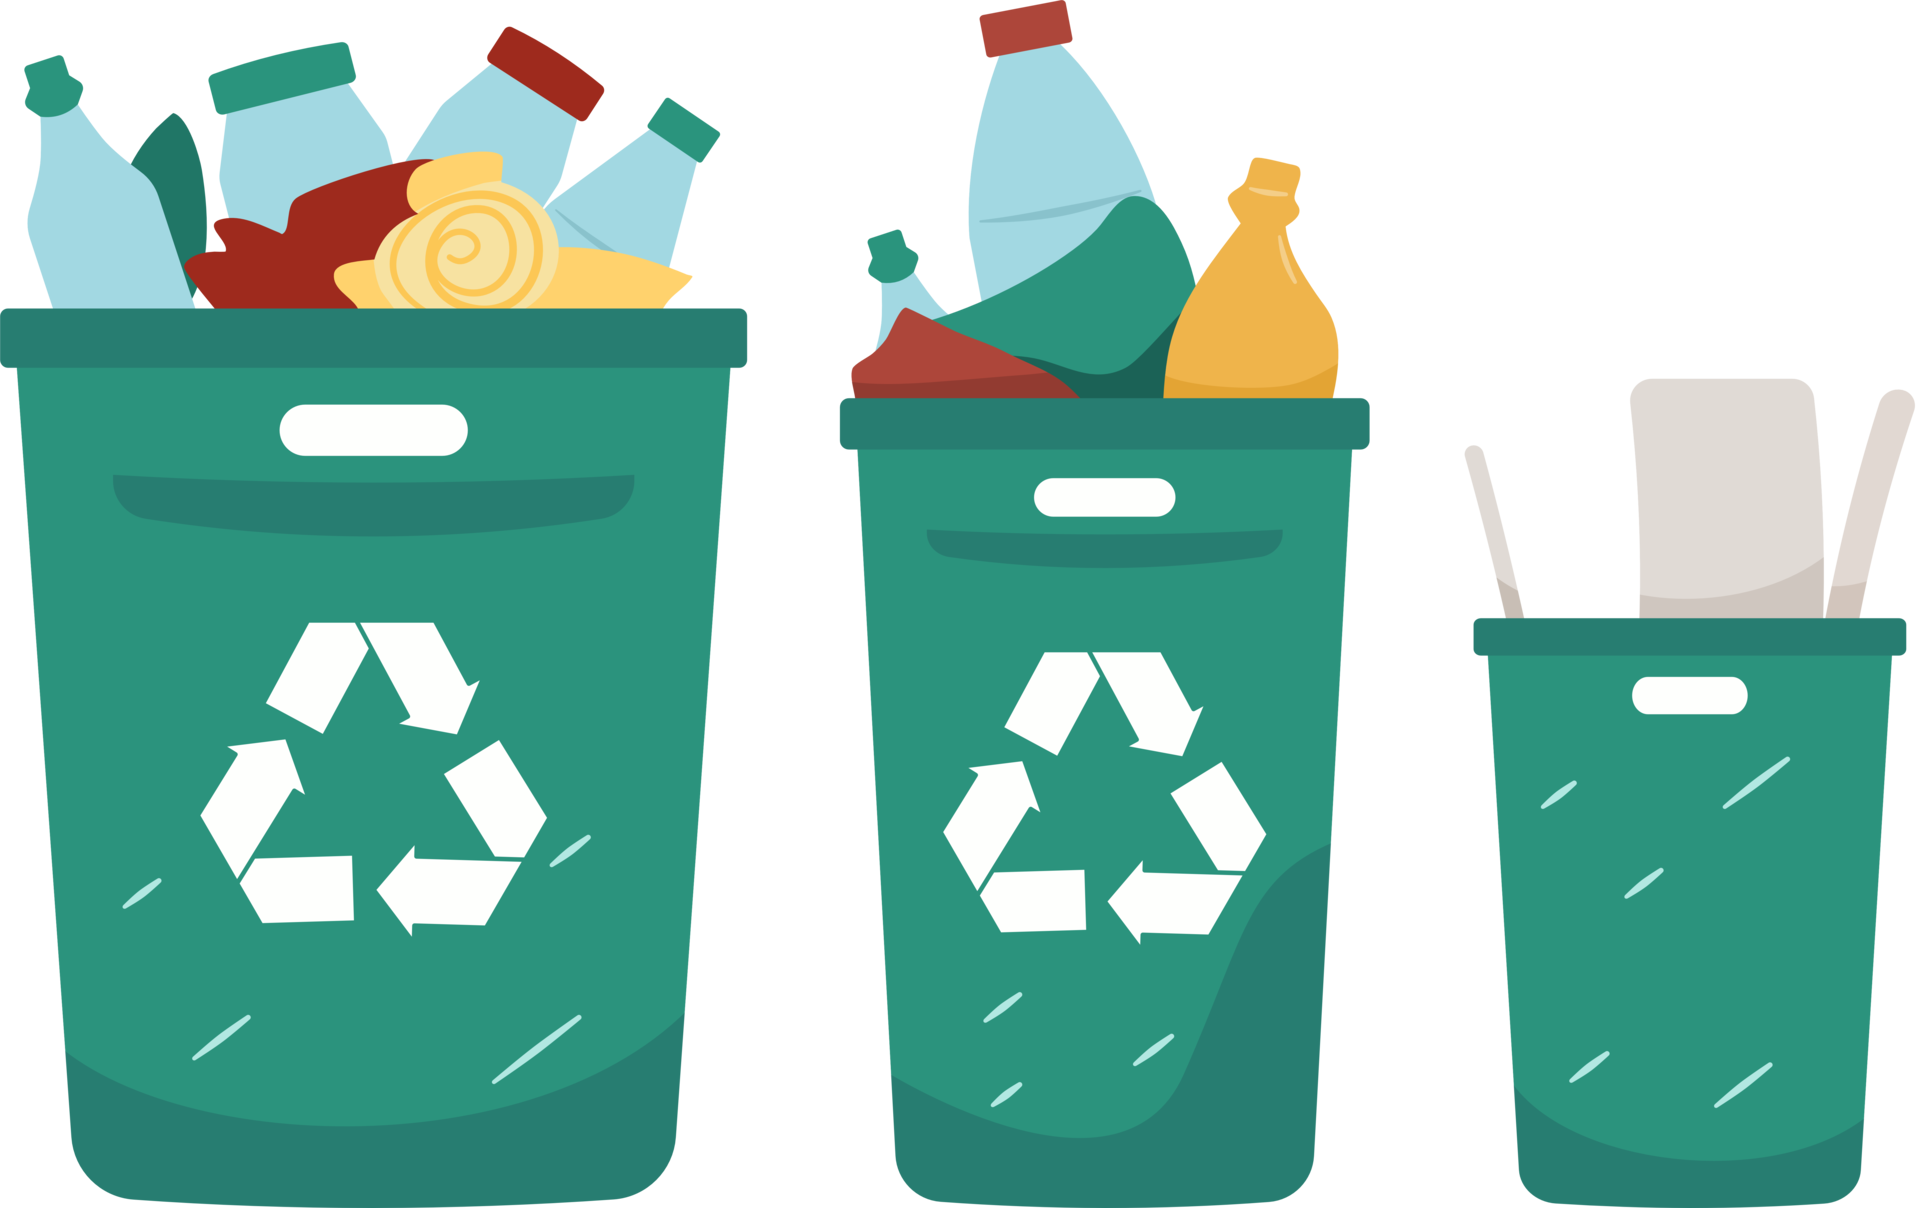 waste management logo png